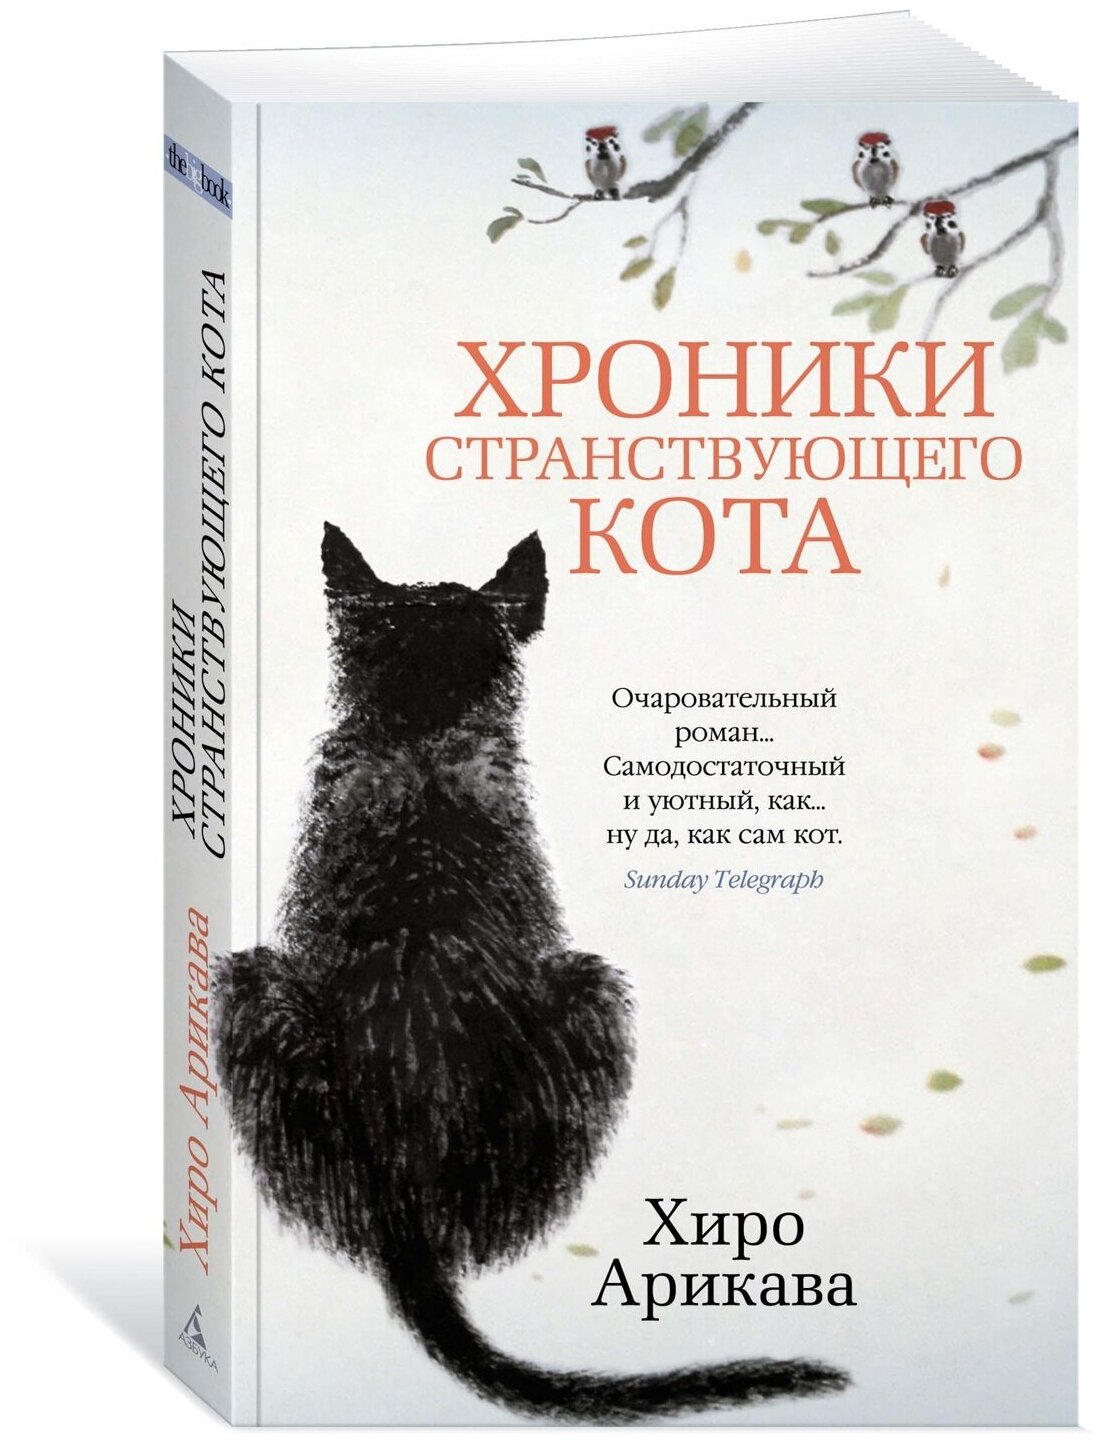 Книга Хроники странствующего кота